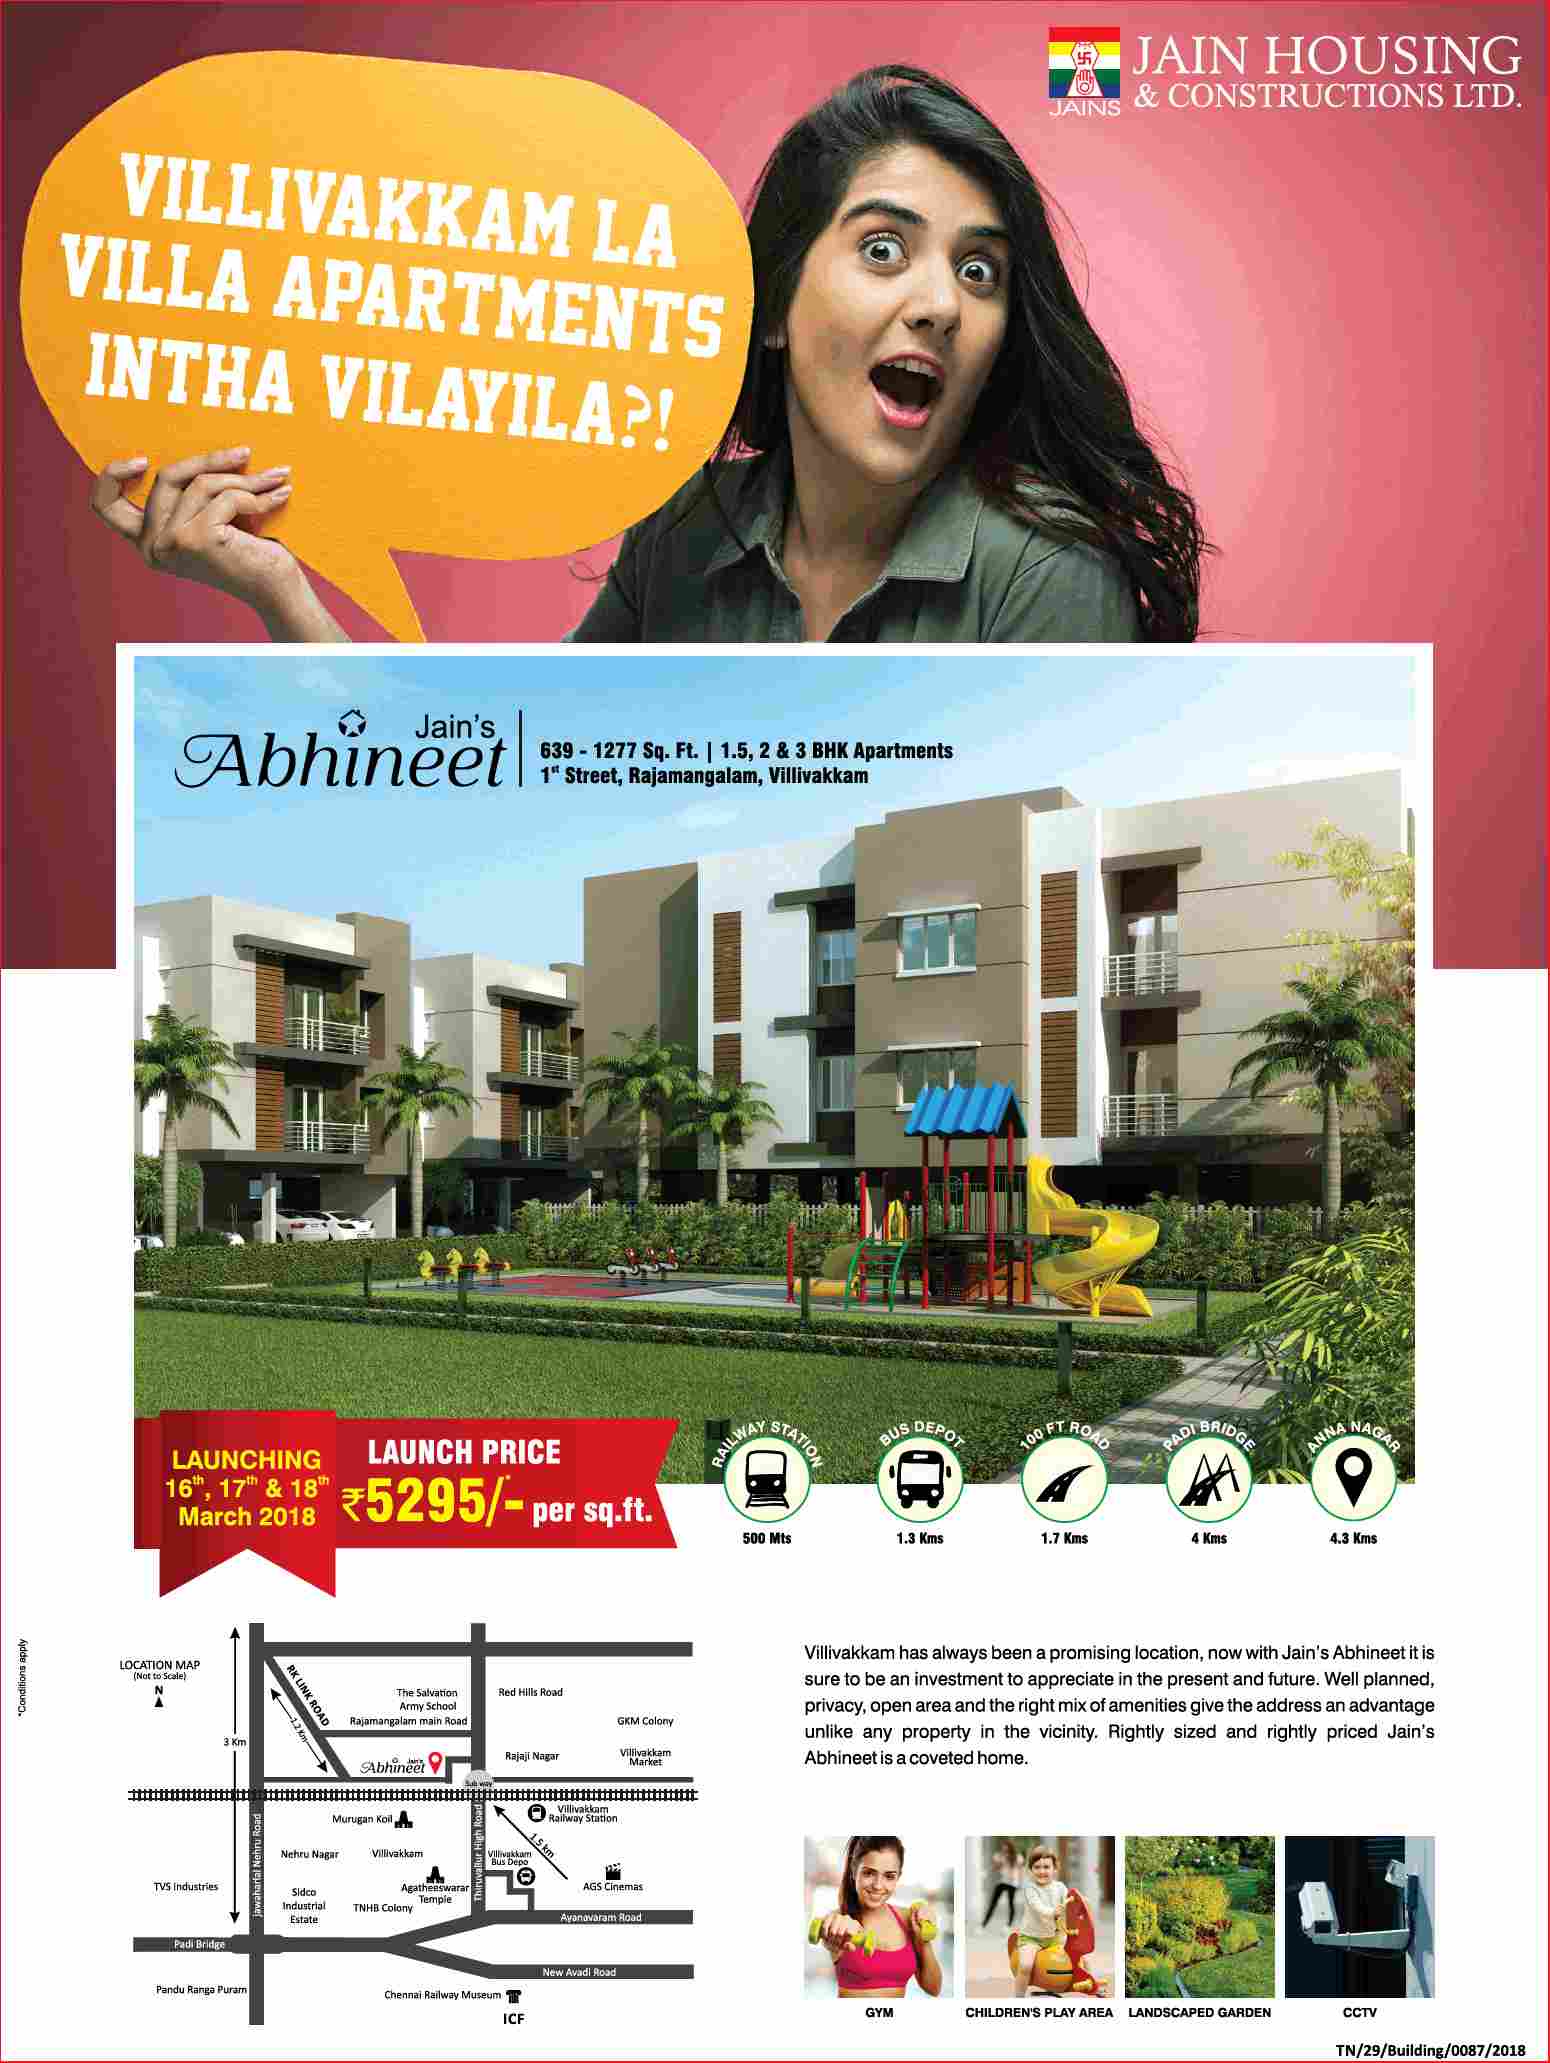 Launch price of Rs. 5295 per sq.ft. at Jain's Abhineet in Chennai